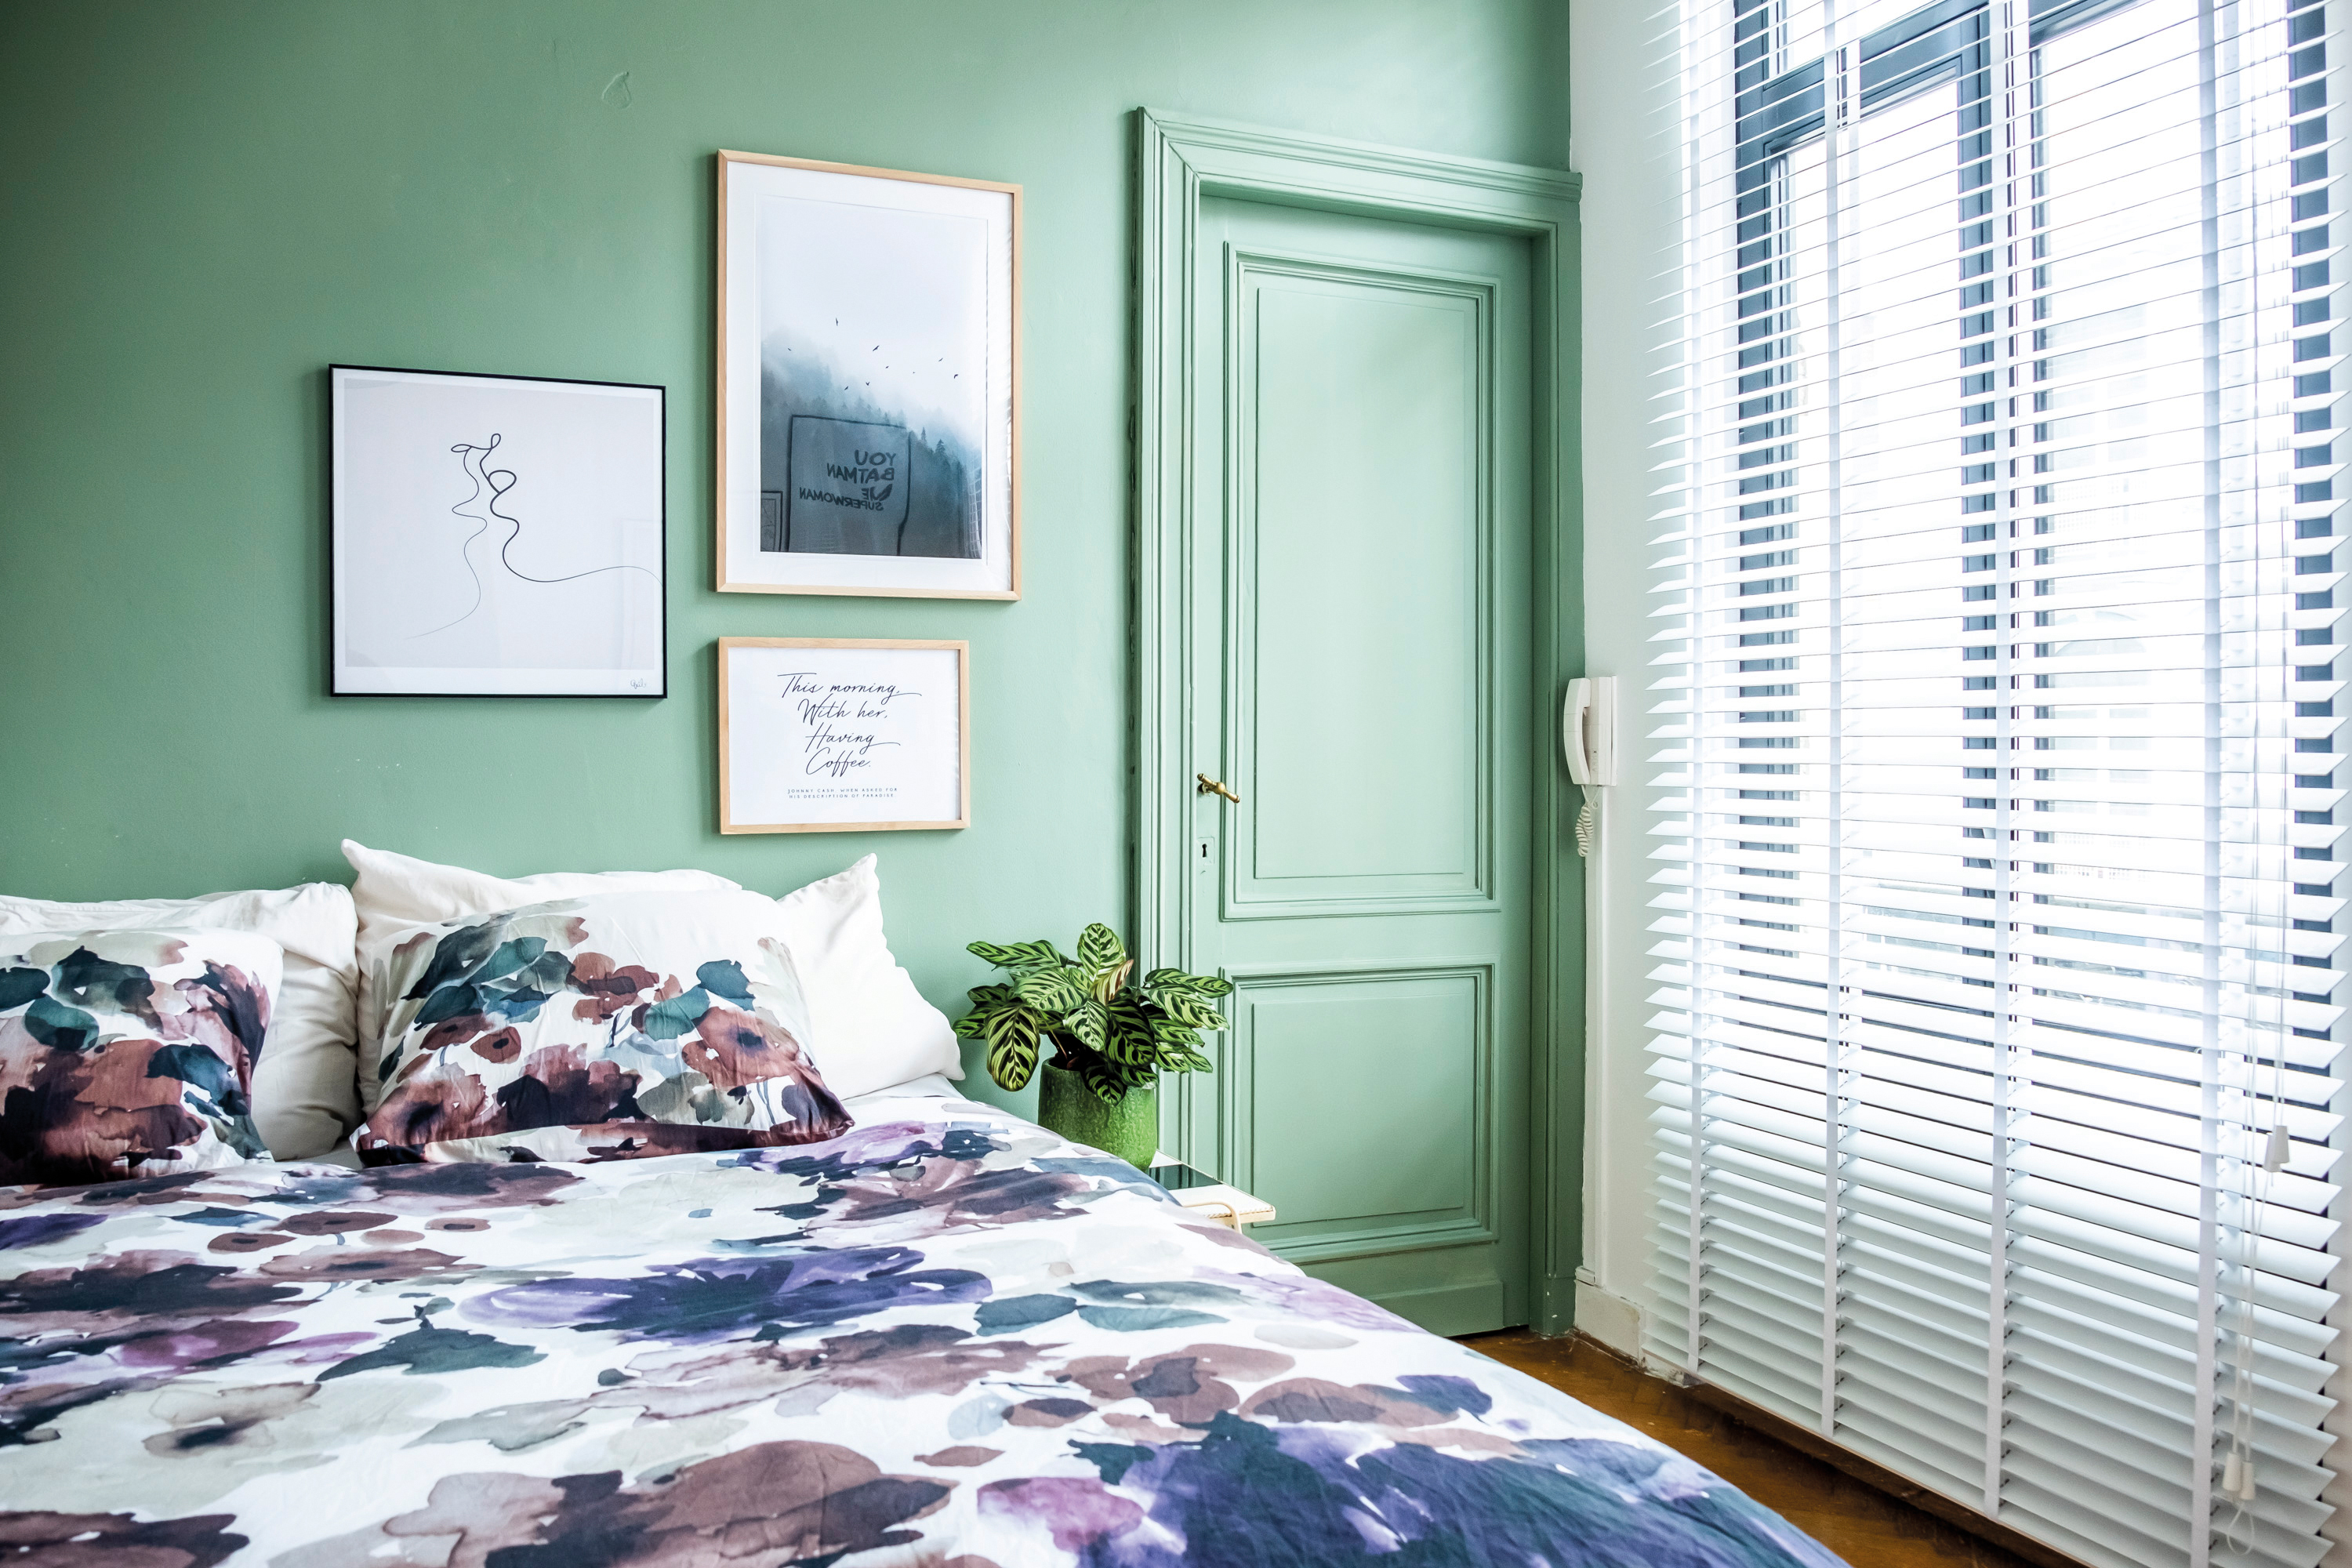 Occlusie Verbazing Fervent 3 tips bij het schilderen van je slaapkamer | Sundae